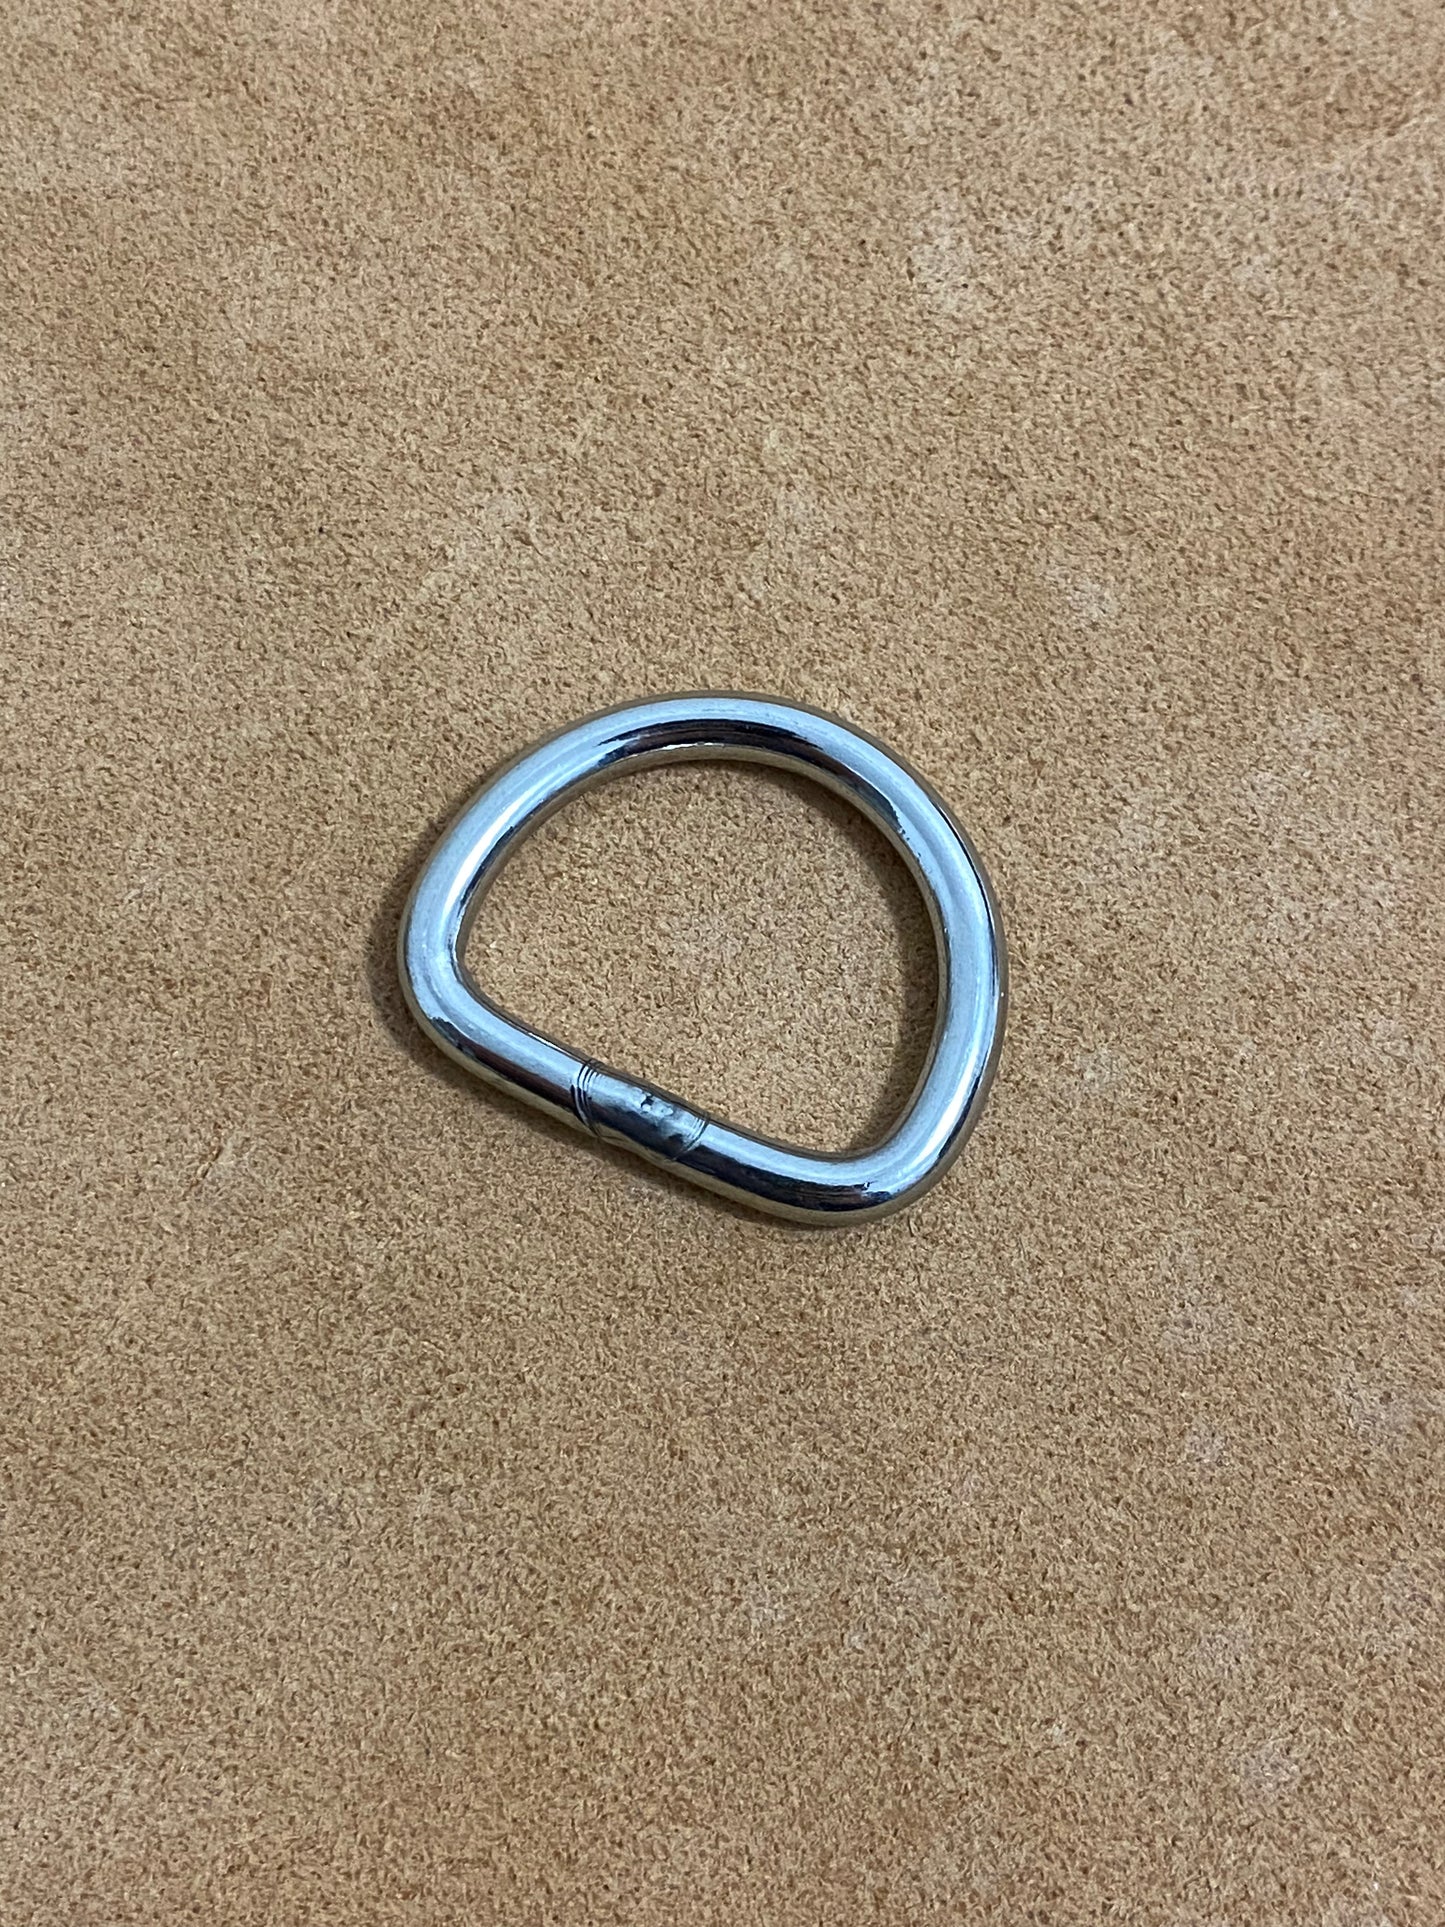 Carico di rottura D-ring in acciaio inox 200 KG | Passaggio 25x20 mm